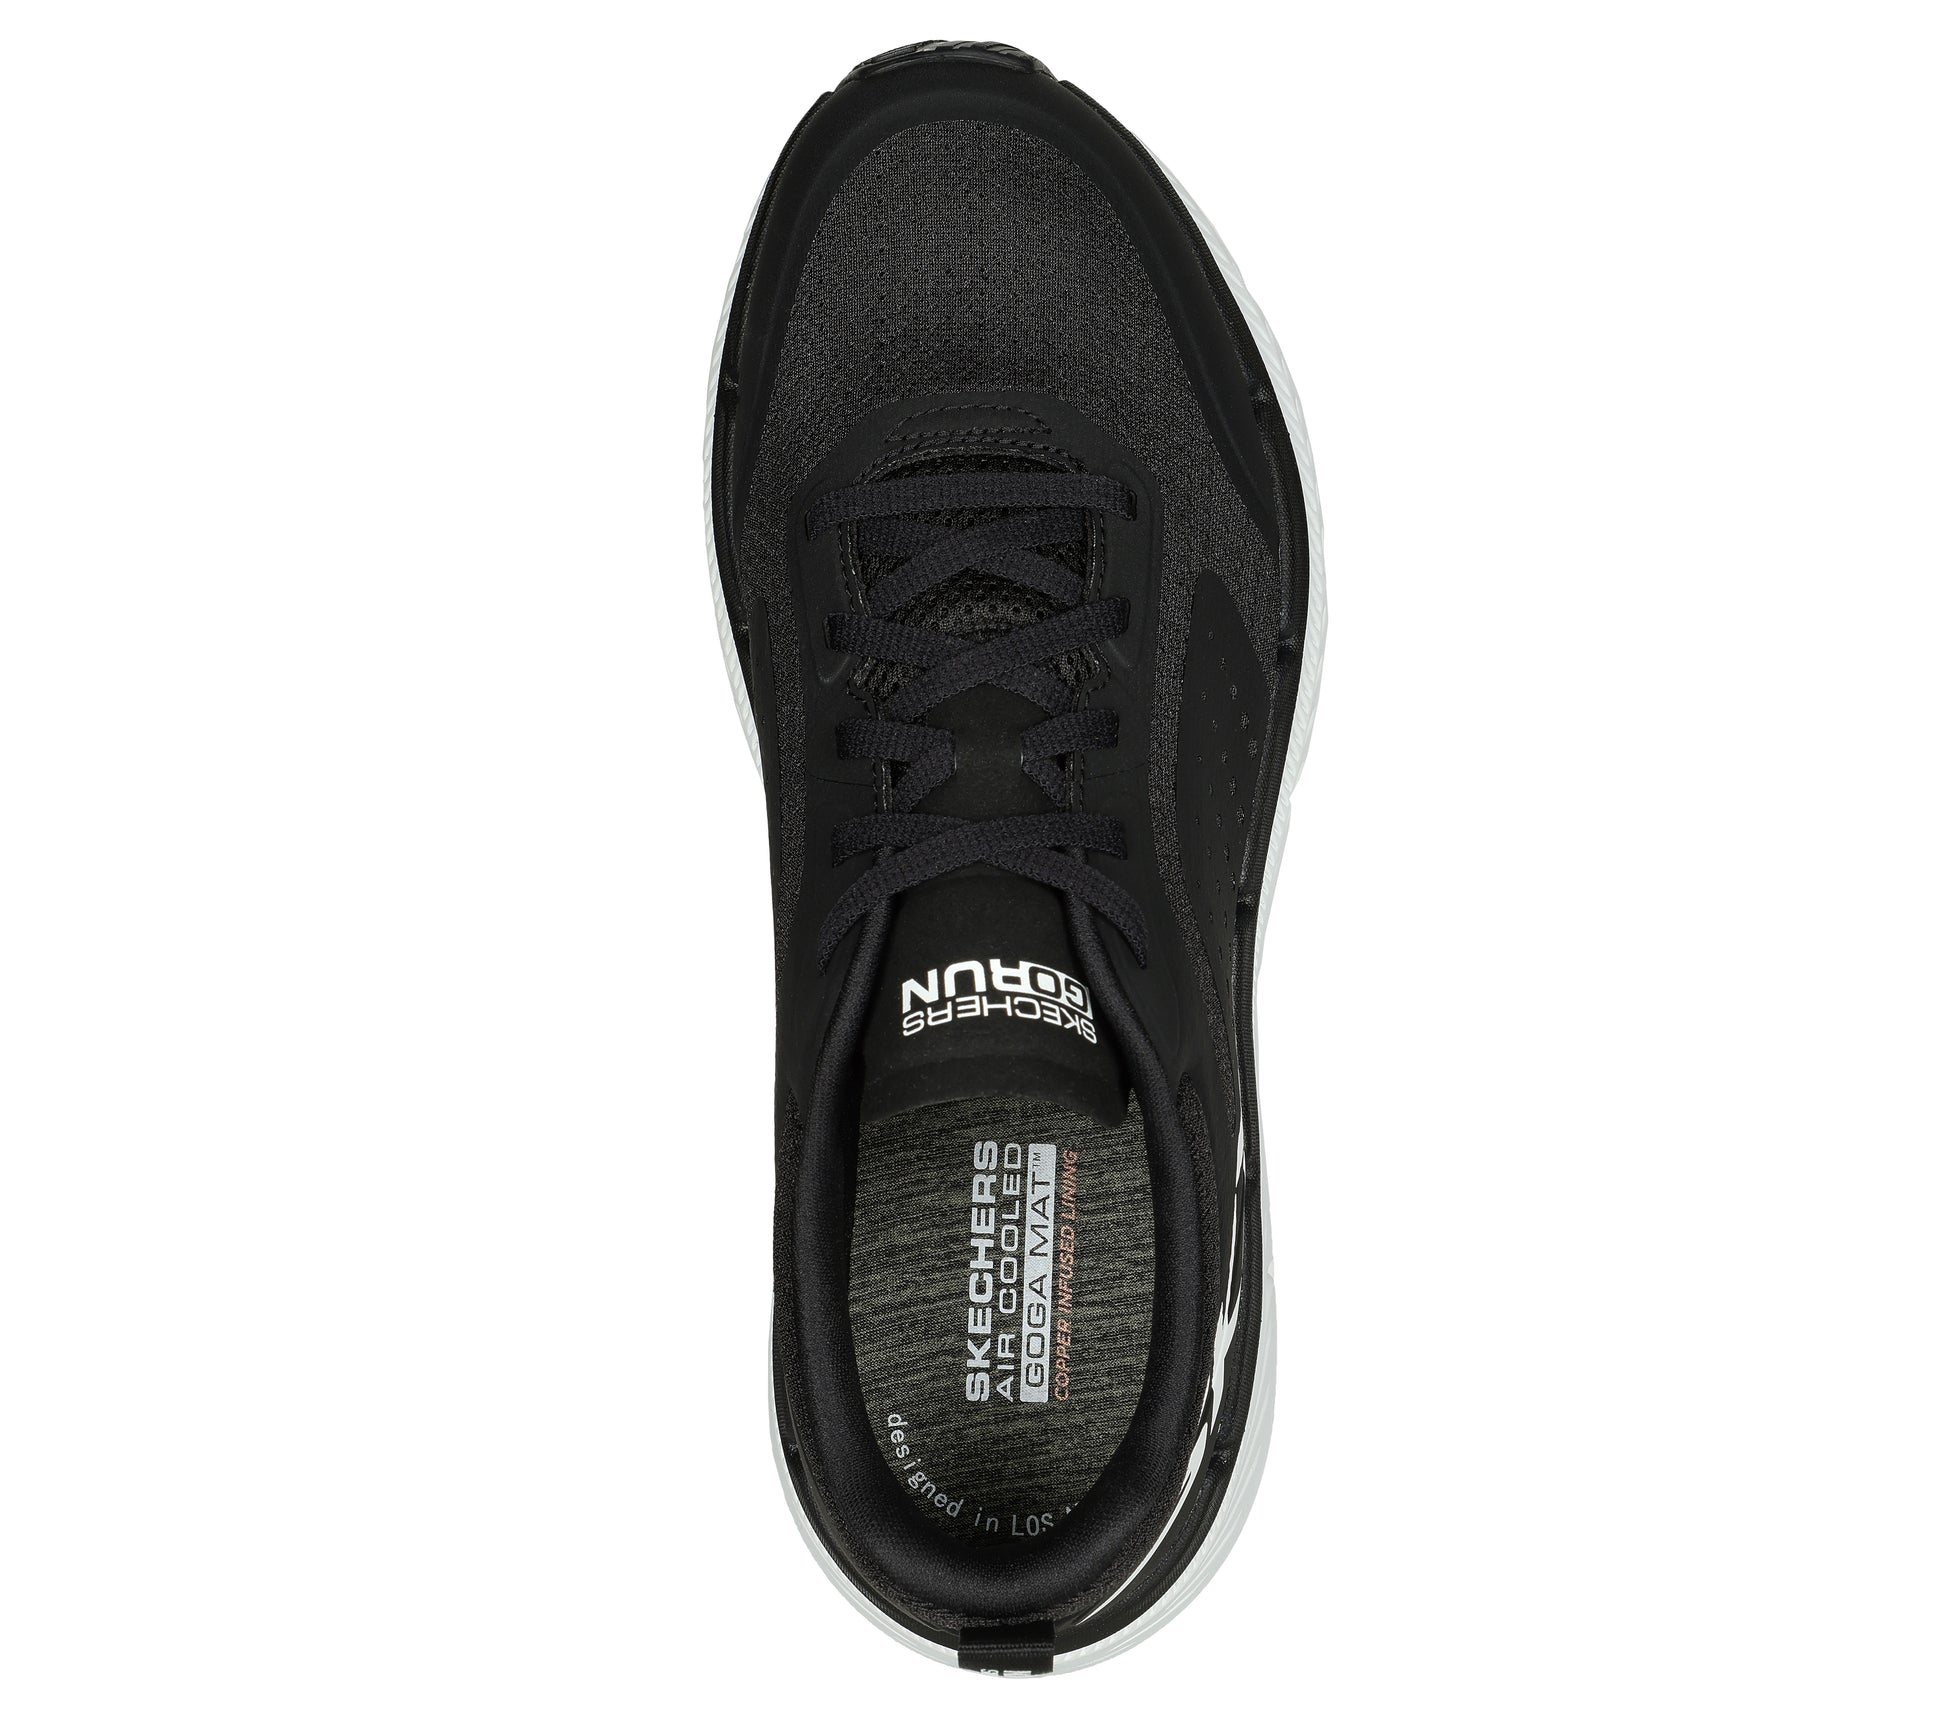 נעלי ספורט לגברים Engineered Mesh Lace Up בצבע שחור ואפור